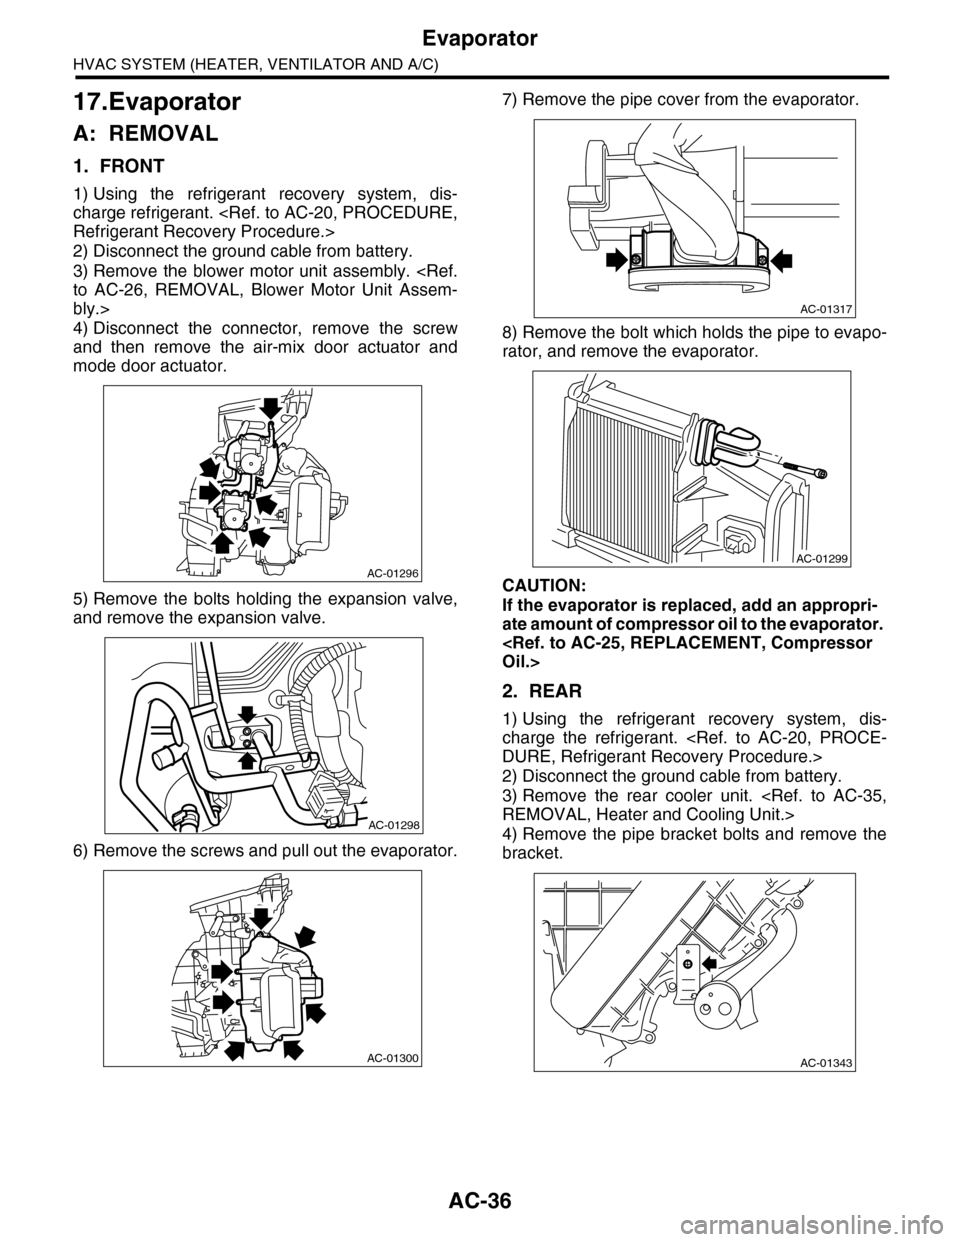 SUBARU TRIBECA 2009 1.G Service Workshop Manual AC-36
Evaporator
HVAC SYSTEM (HEATER, VENTILATOR AND A/C)
17.Evaporator
A: REMOVAL
1. FRONT
1) Using  the  refrigerant  recovery  system,  dis-
charge refrigerant. <Ref. to AC-20, PROCEDURE,
Refrigera